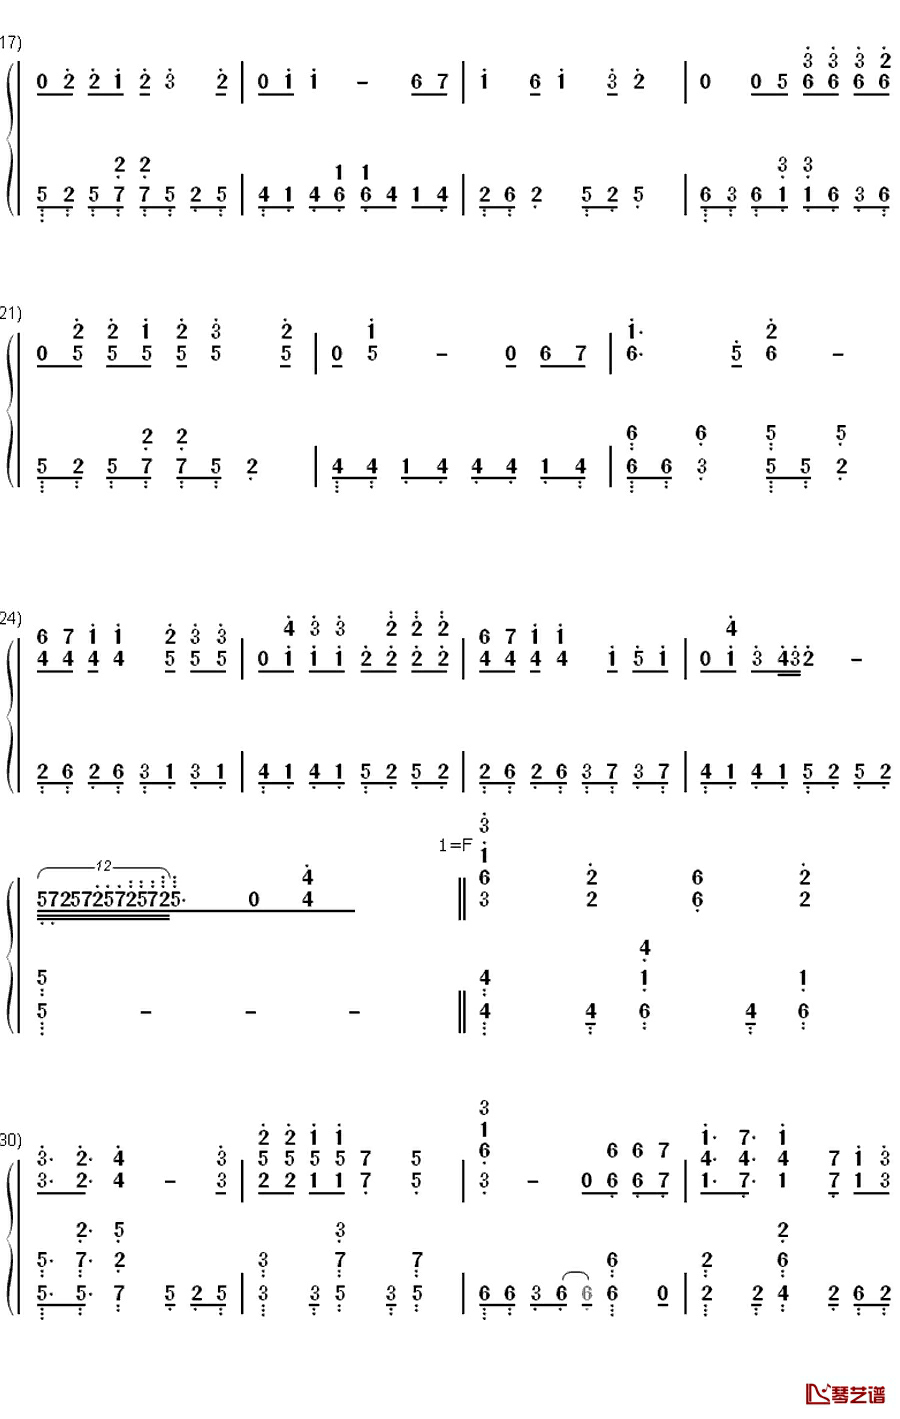 アクアテラリウム钢琴简谱-数字双手-やなぎなぎ
2